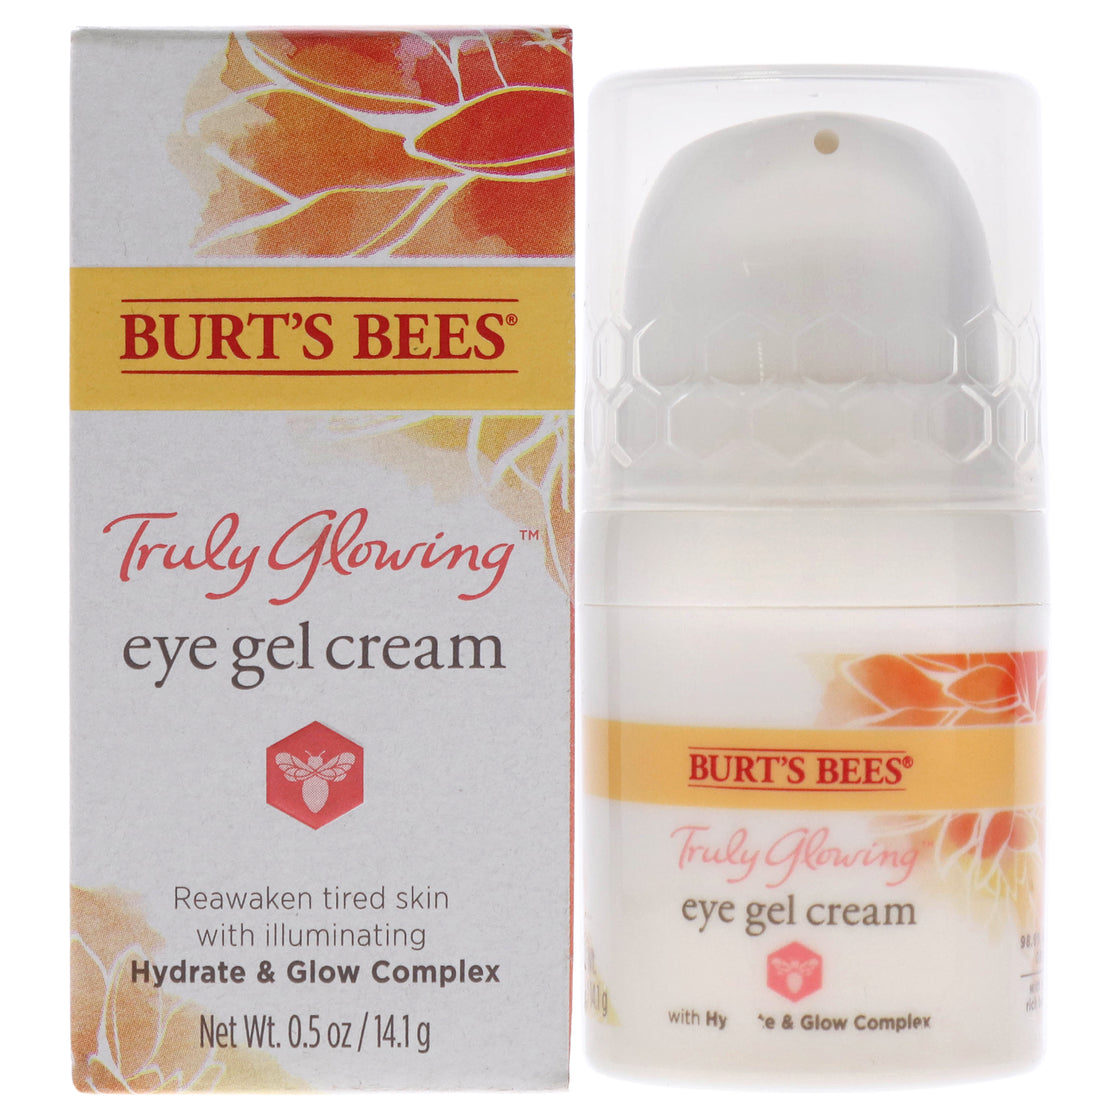 Truly Glowing Eye Gel Cream by Burts Bees for Unisex - 0.5 oz Cream